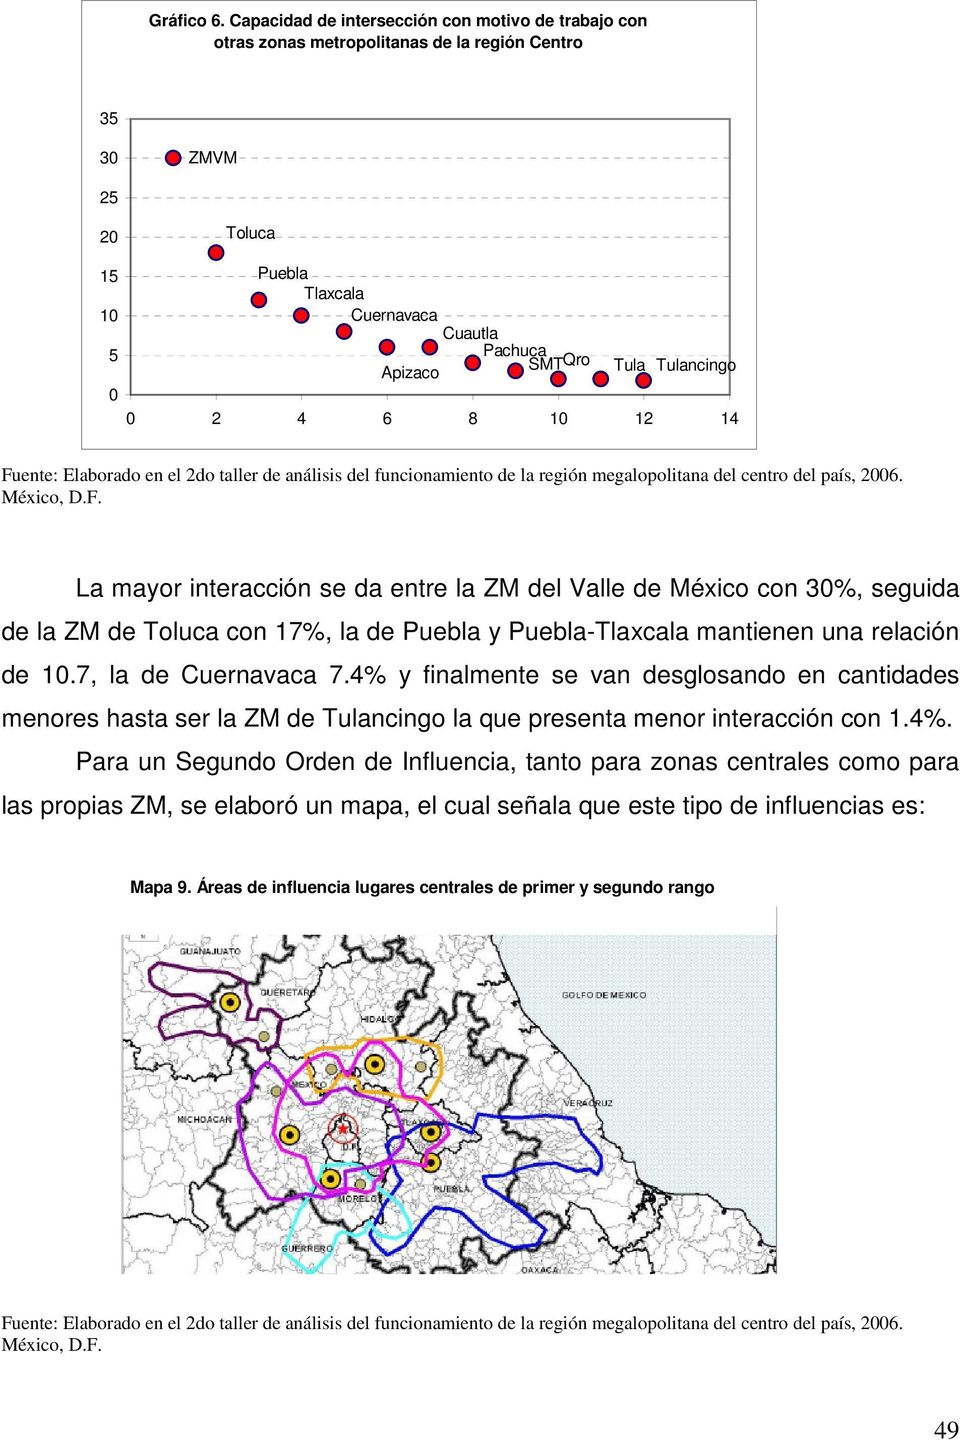 Tulancingo 0 0 2 4 6 8 10 12 14 Fuente: Elaborado en el 2do taller de análisis del funcionamiento de la región megalopolitana del centro del país, 2006. México, D.F. La mayor interacción se da entre la ZM del Valle de México con 30%, seguida de la ZM de Toluca con 17%, la de Puebla y Puebla-Tlaxcala mantienen una relación de 10.